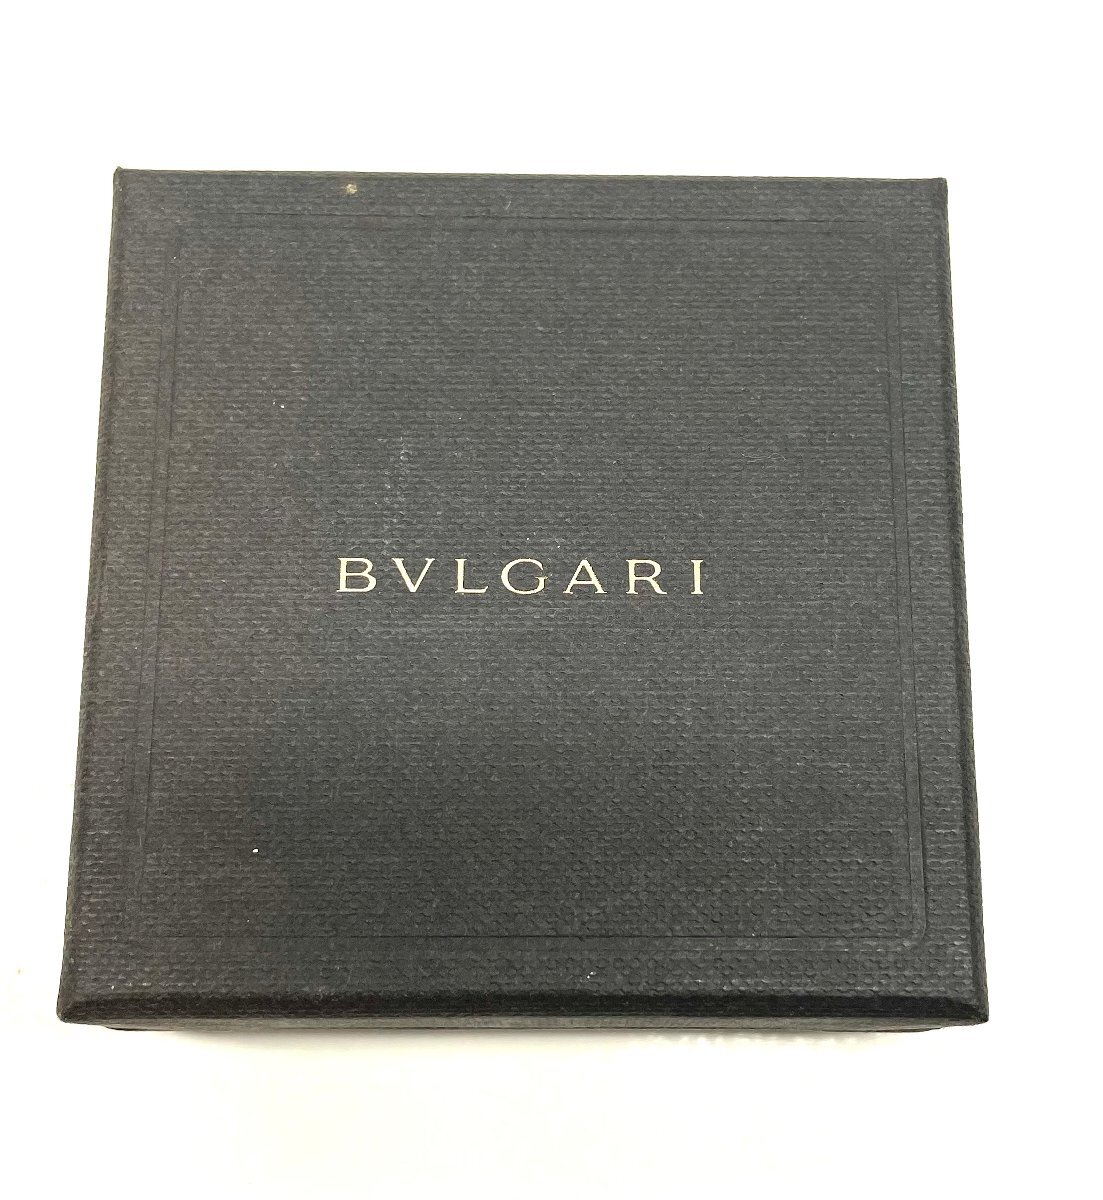 BVLGARI ブルガリ キーリング シルバー SV925 ペンダントトップ ネックレストップ 革ひも ネックレス 箱付き_画像7